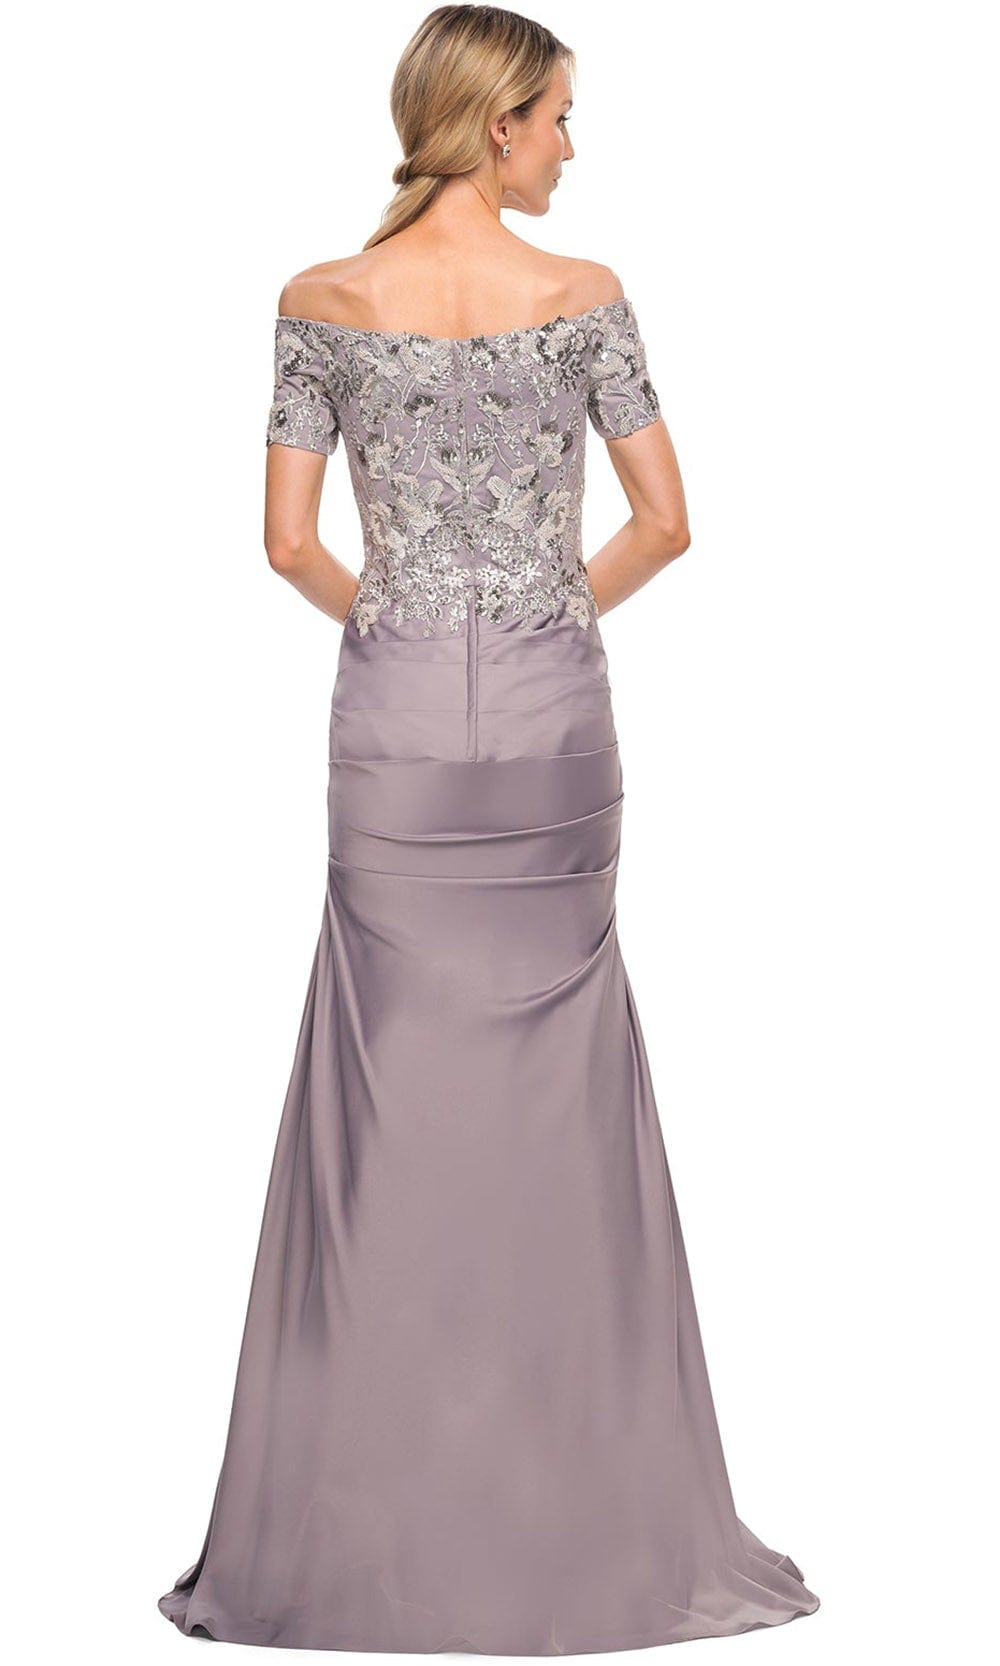 La Femme 30045 - Off-Shoulder Embroidered Dress Special Occasion Dress